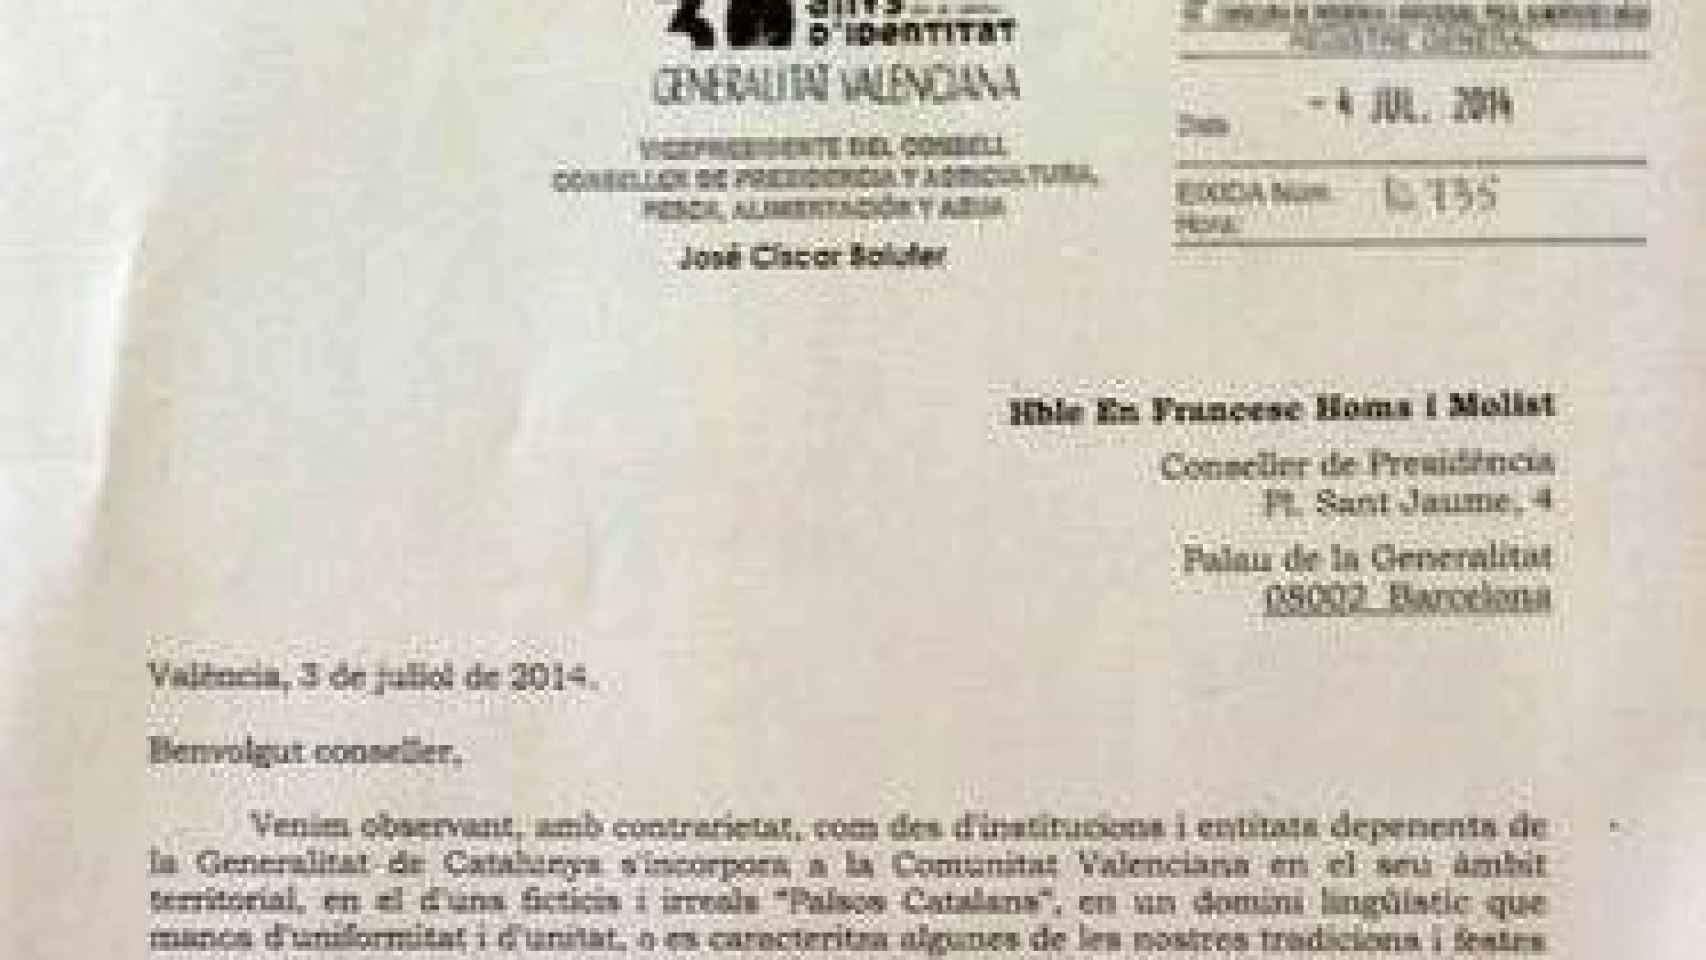 La Generalidad Valenciana rechaza la ofensiva pancatalanista de Mas